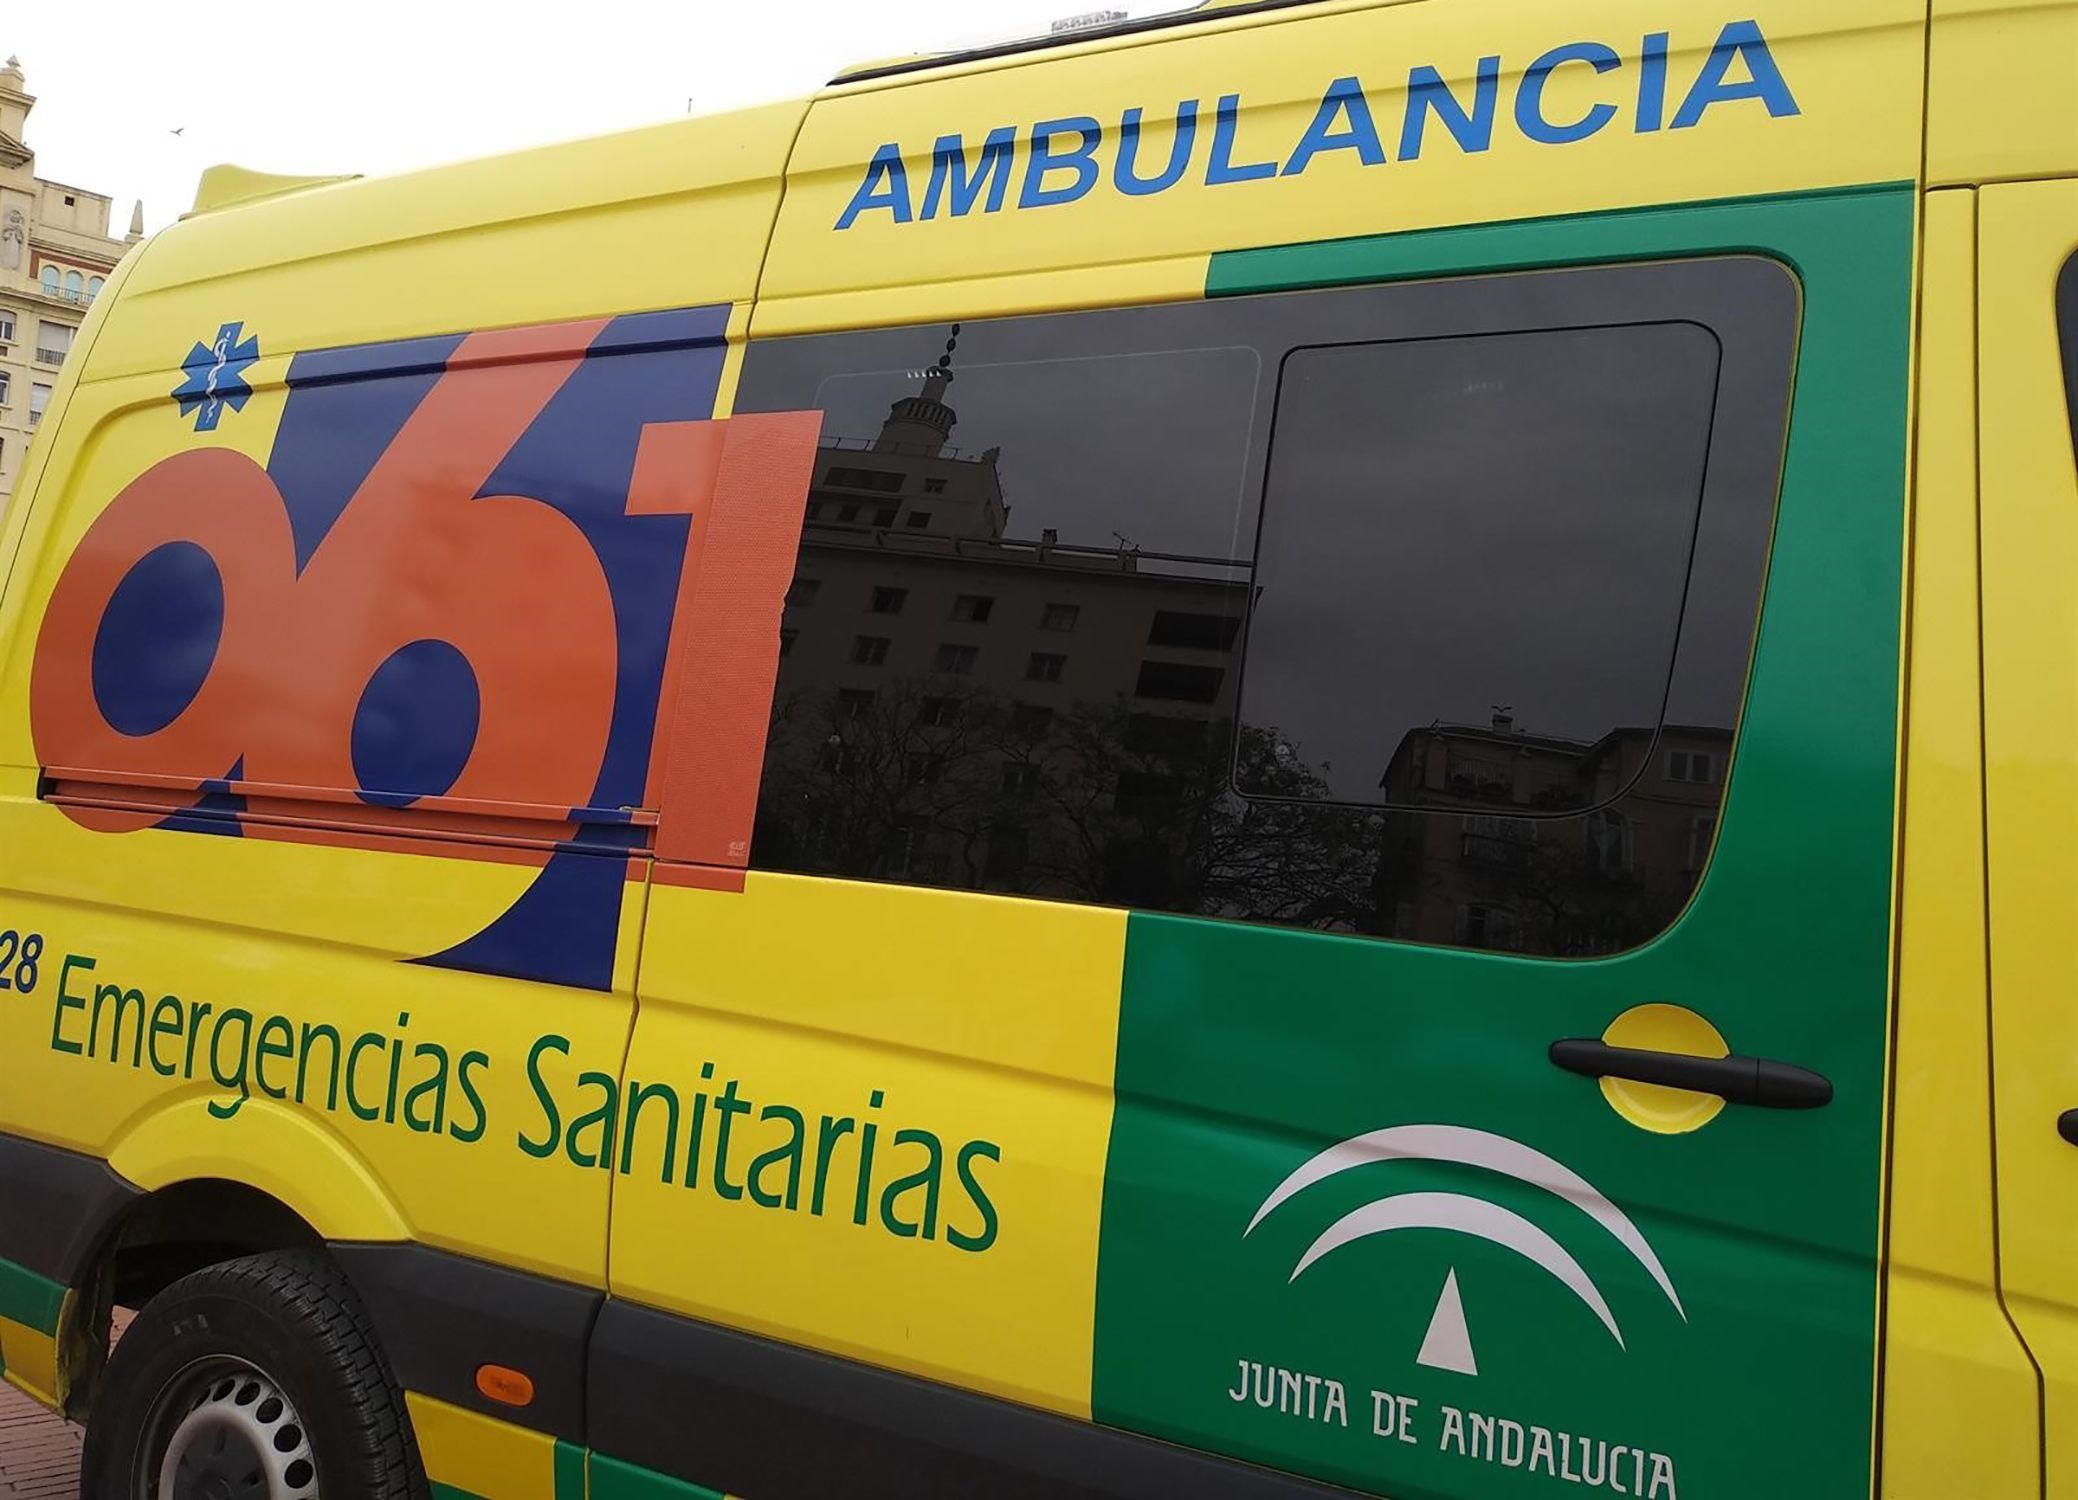 Ambulància 061 Andalucia / EFE